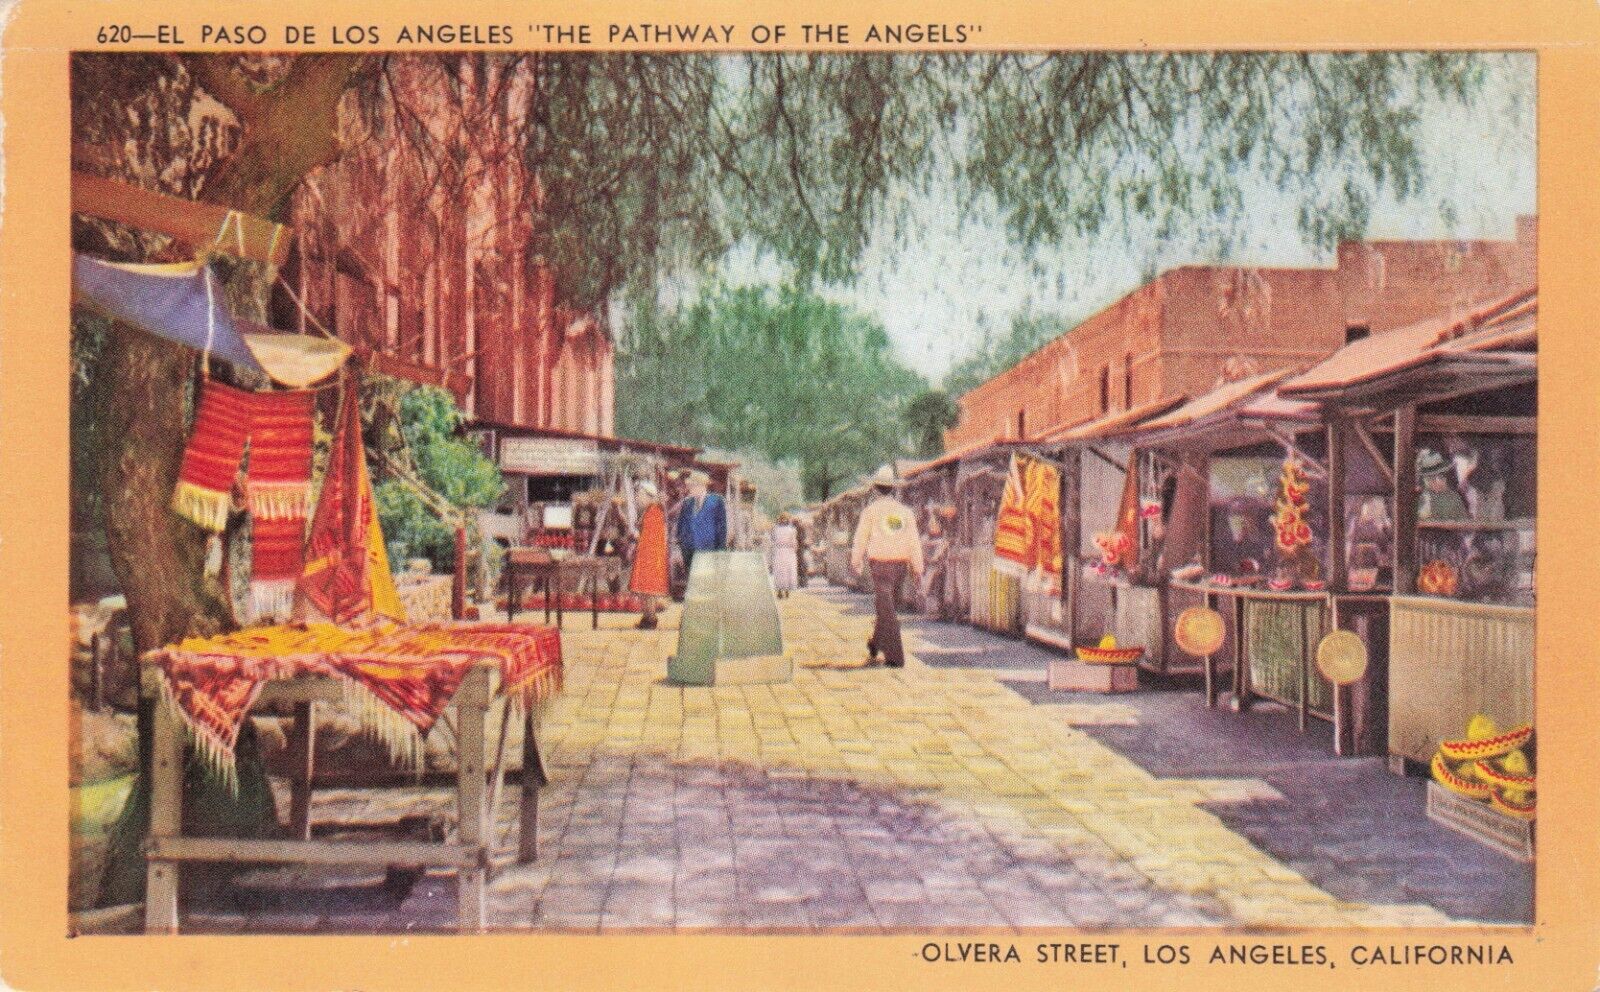 Artist Card Olvera Street Los Angeles CA Pathway of Angels Vintage Postcard